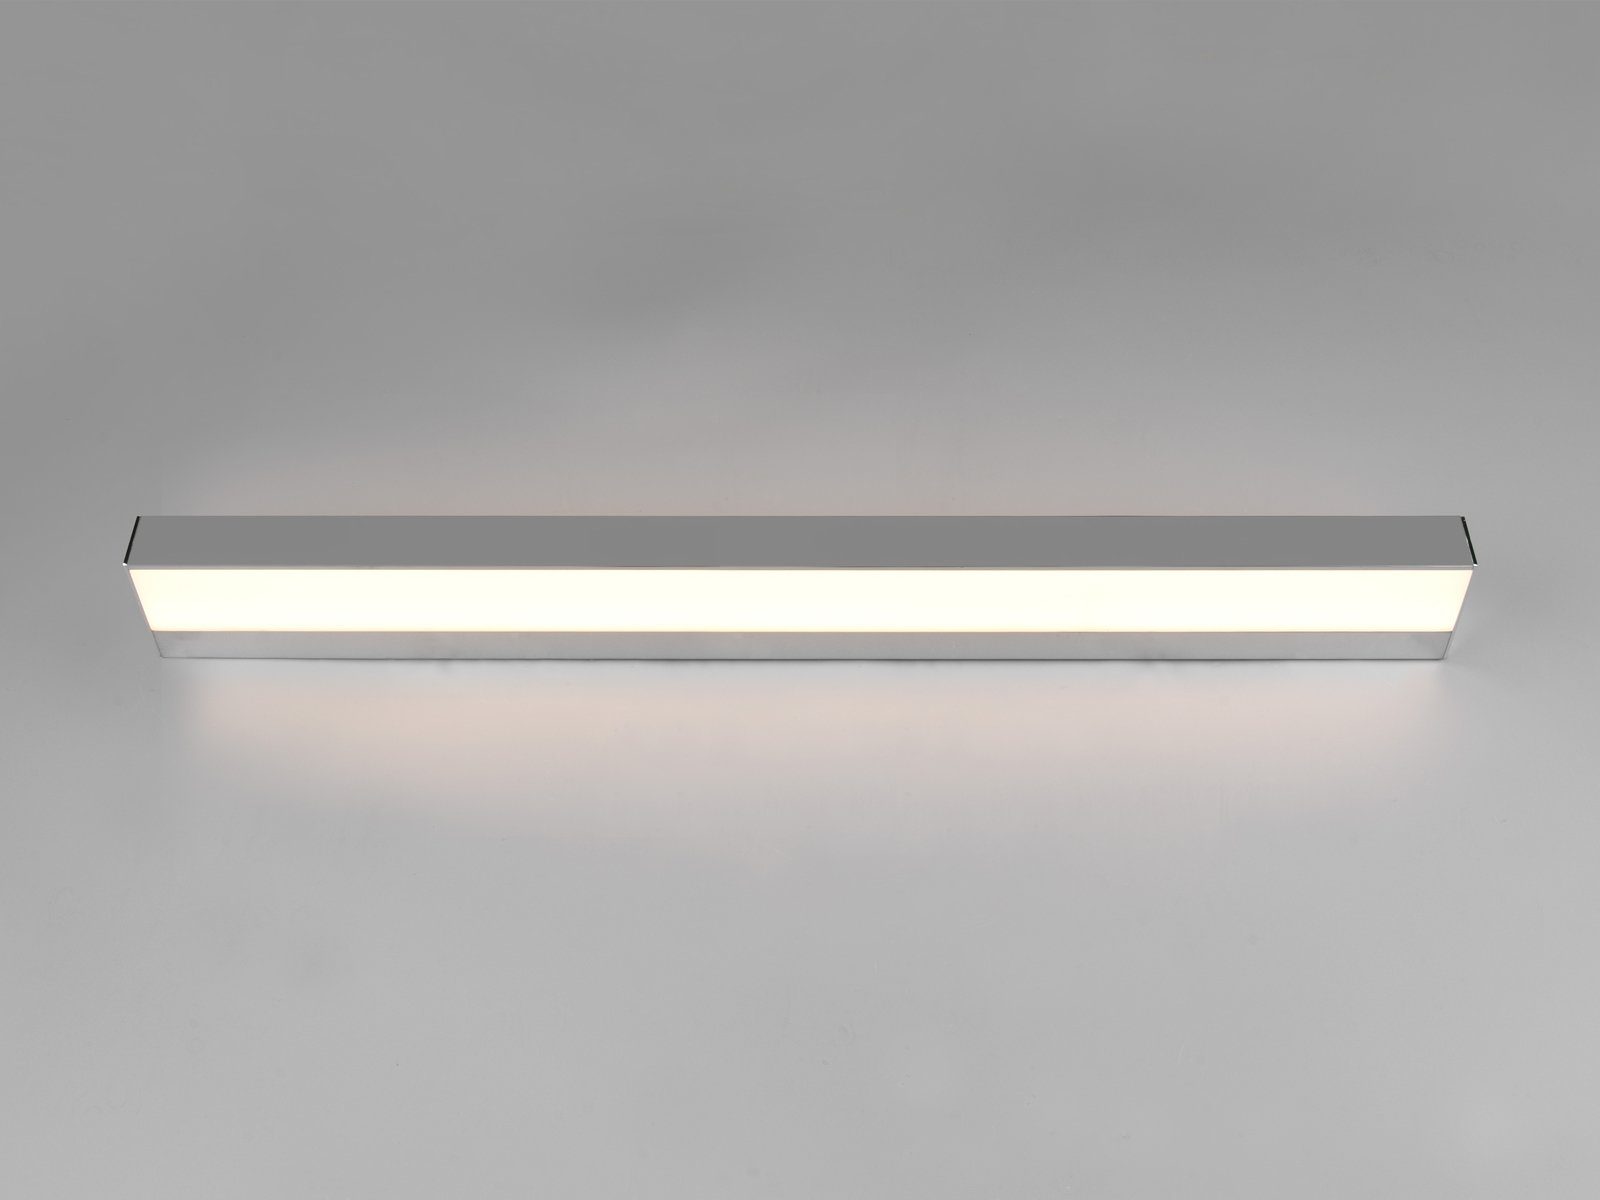 Silber Bad-lampen Spiegelleuchte, Beleuchtung Wand, Warmweiß, LED 2er fest Set Badezimmerlampen Weiß Chrom B / meineWunschleuchte indirekte integriert, 90cm